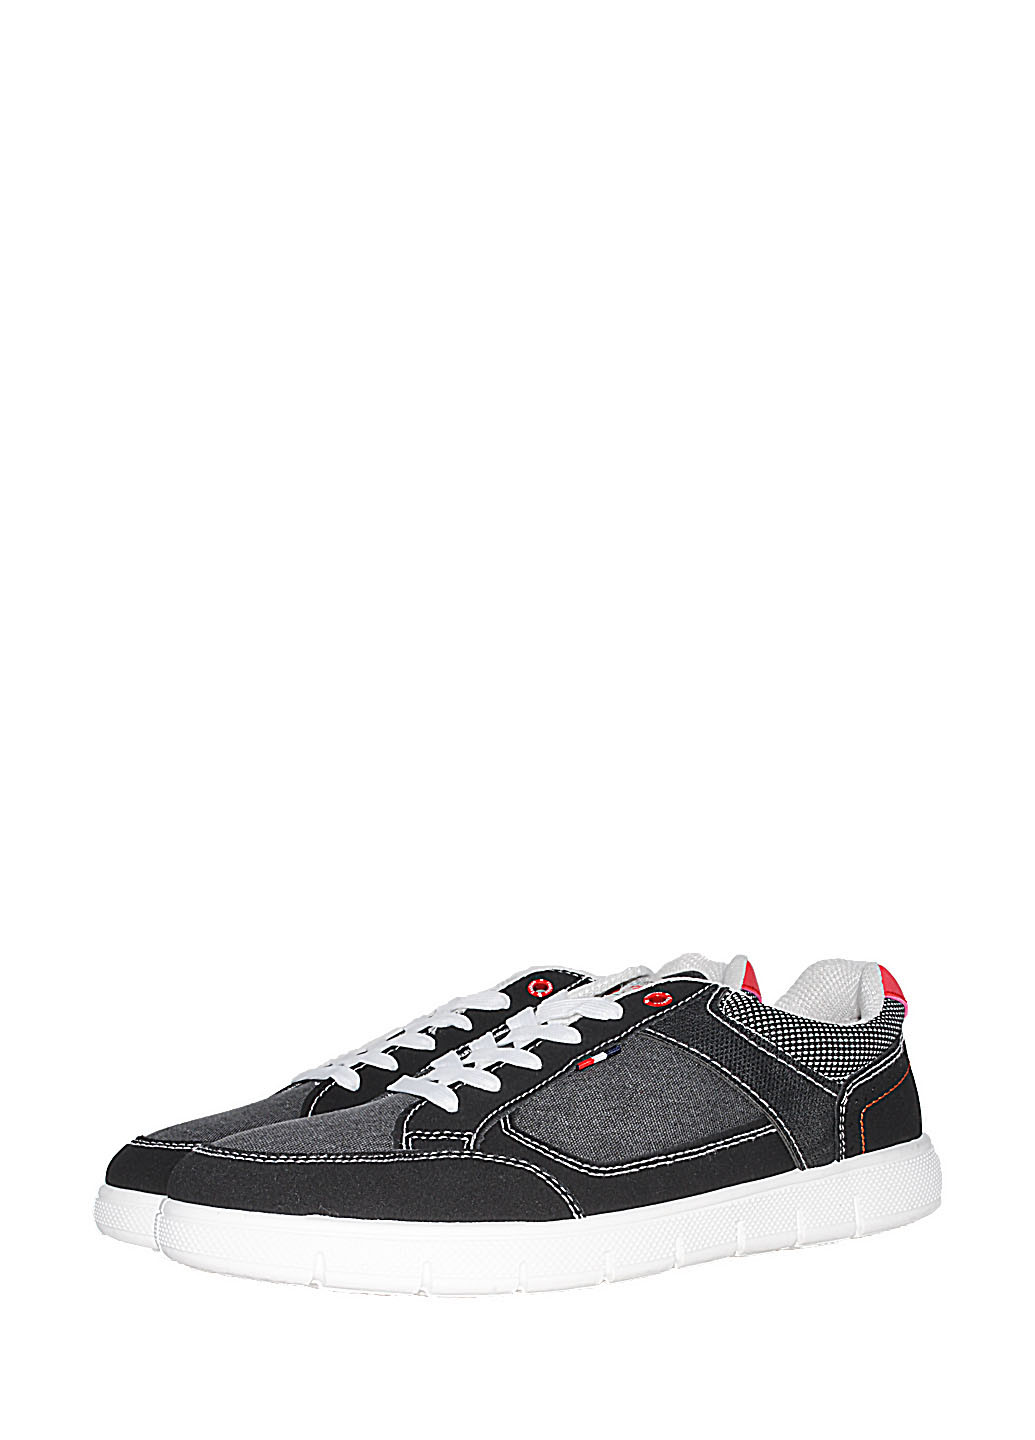 Черные демисезонные кроссовки ra141-7 black Vintage